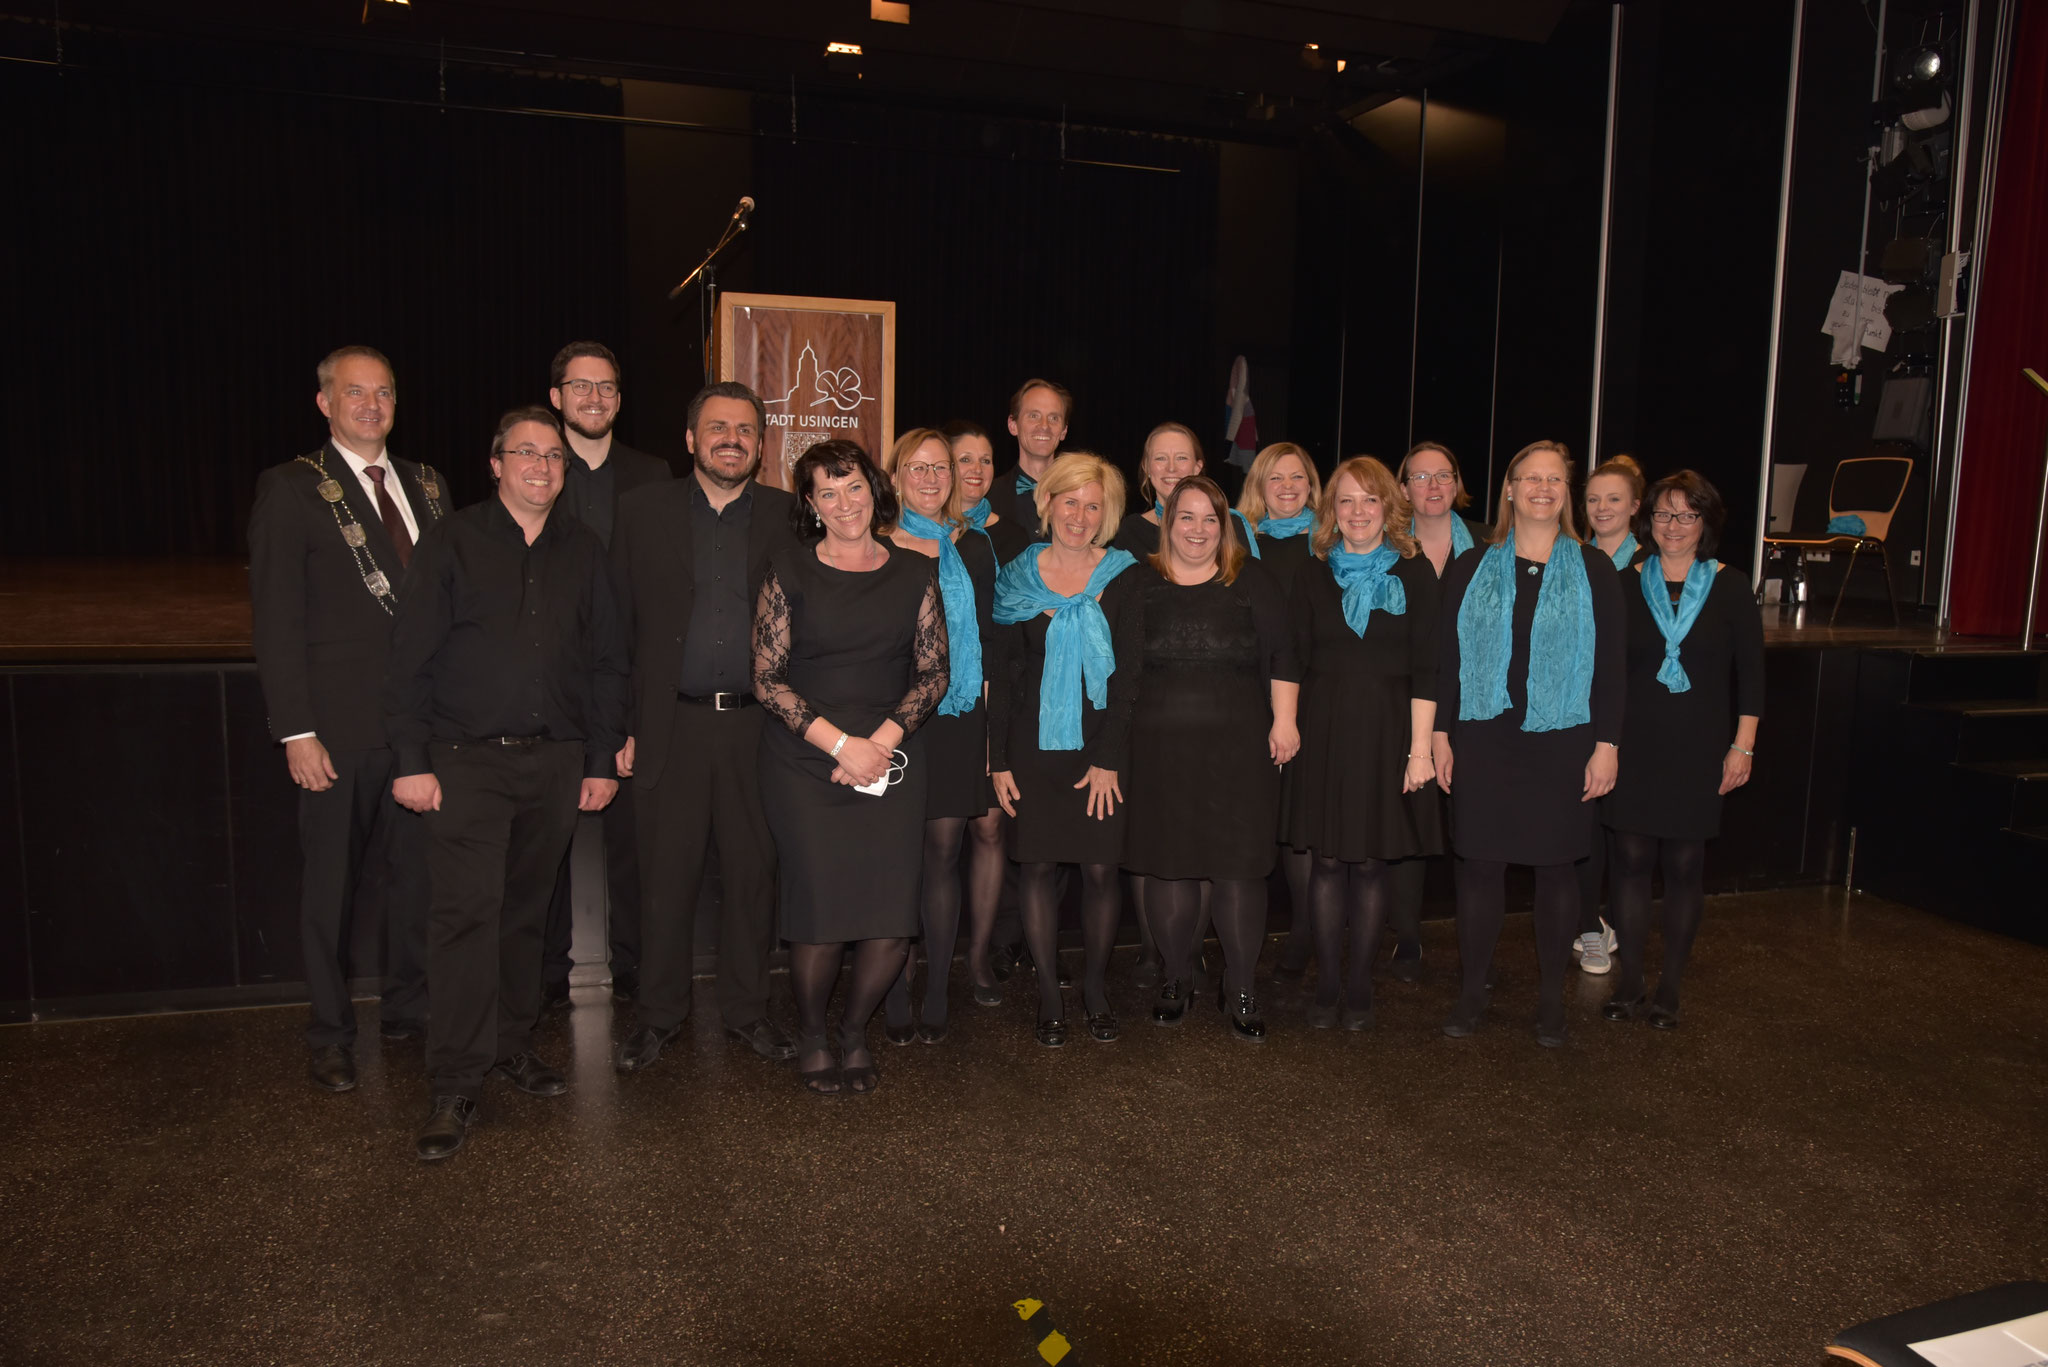 Injoy Singers singen zu Ehren des neuen Bürgermeisters Wernard in der Aula der CWS Usingen zur Amtseinführung